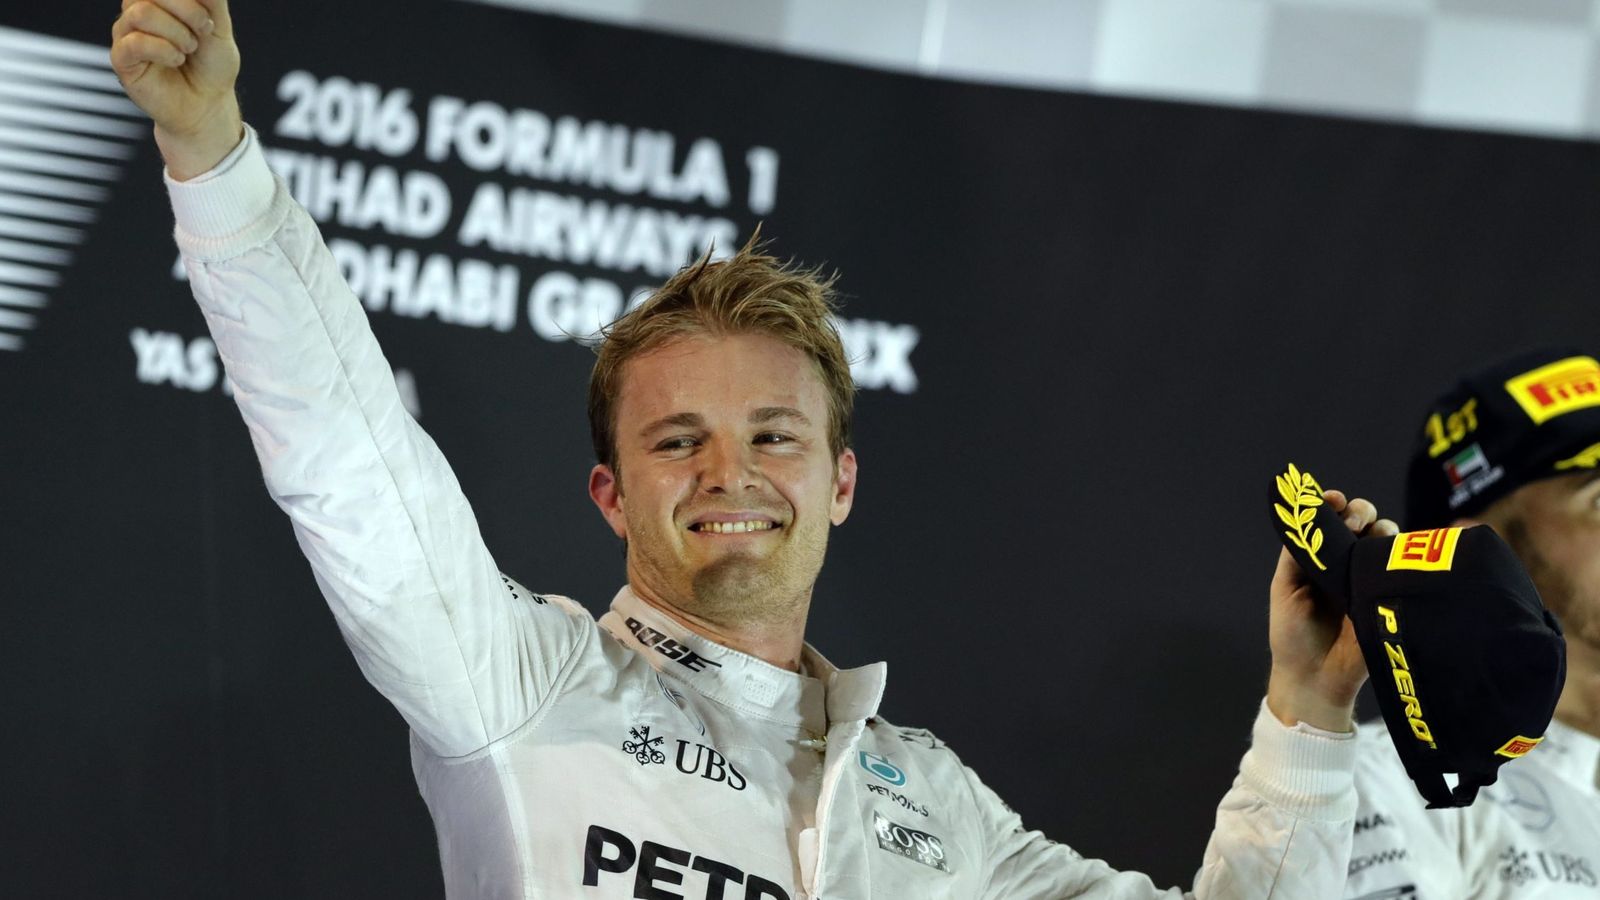 Foto: Nico Rosberg en el podio de Abu Dabi.